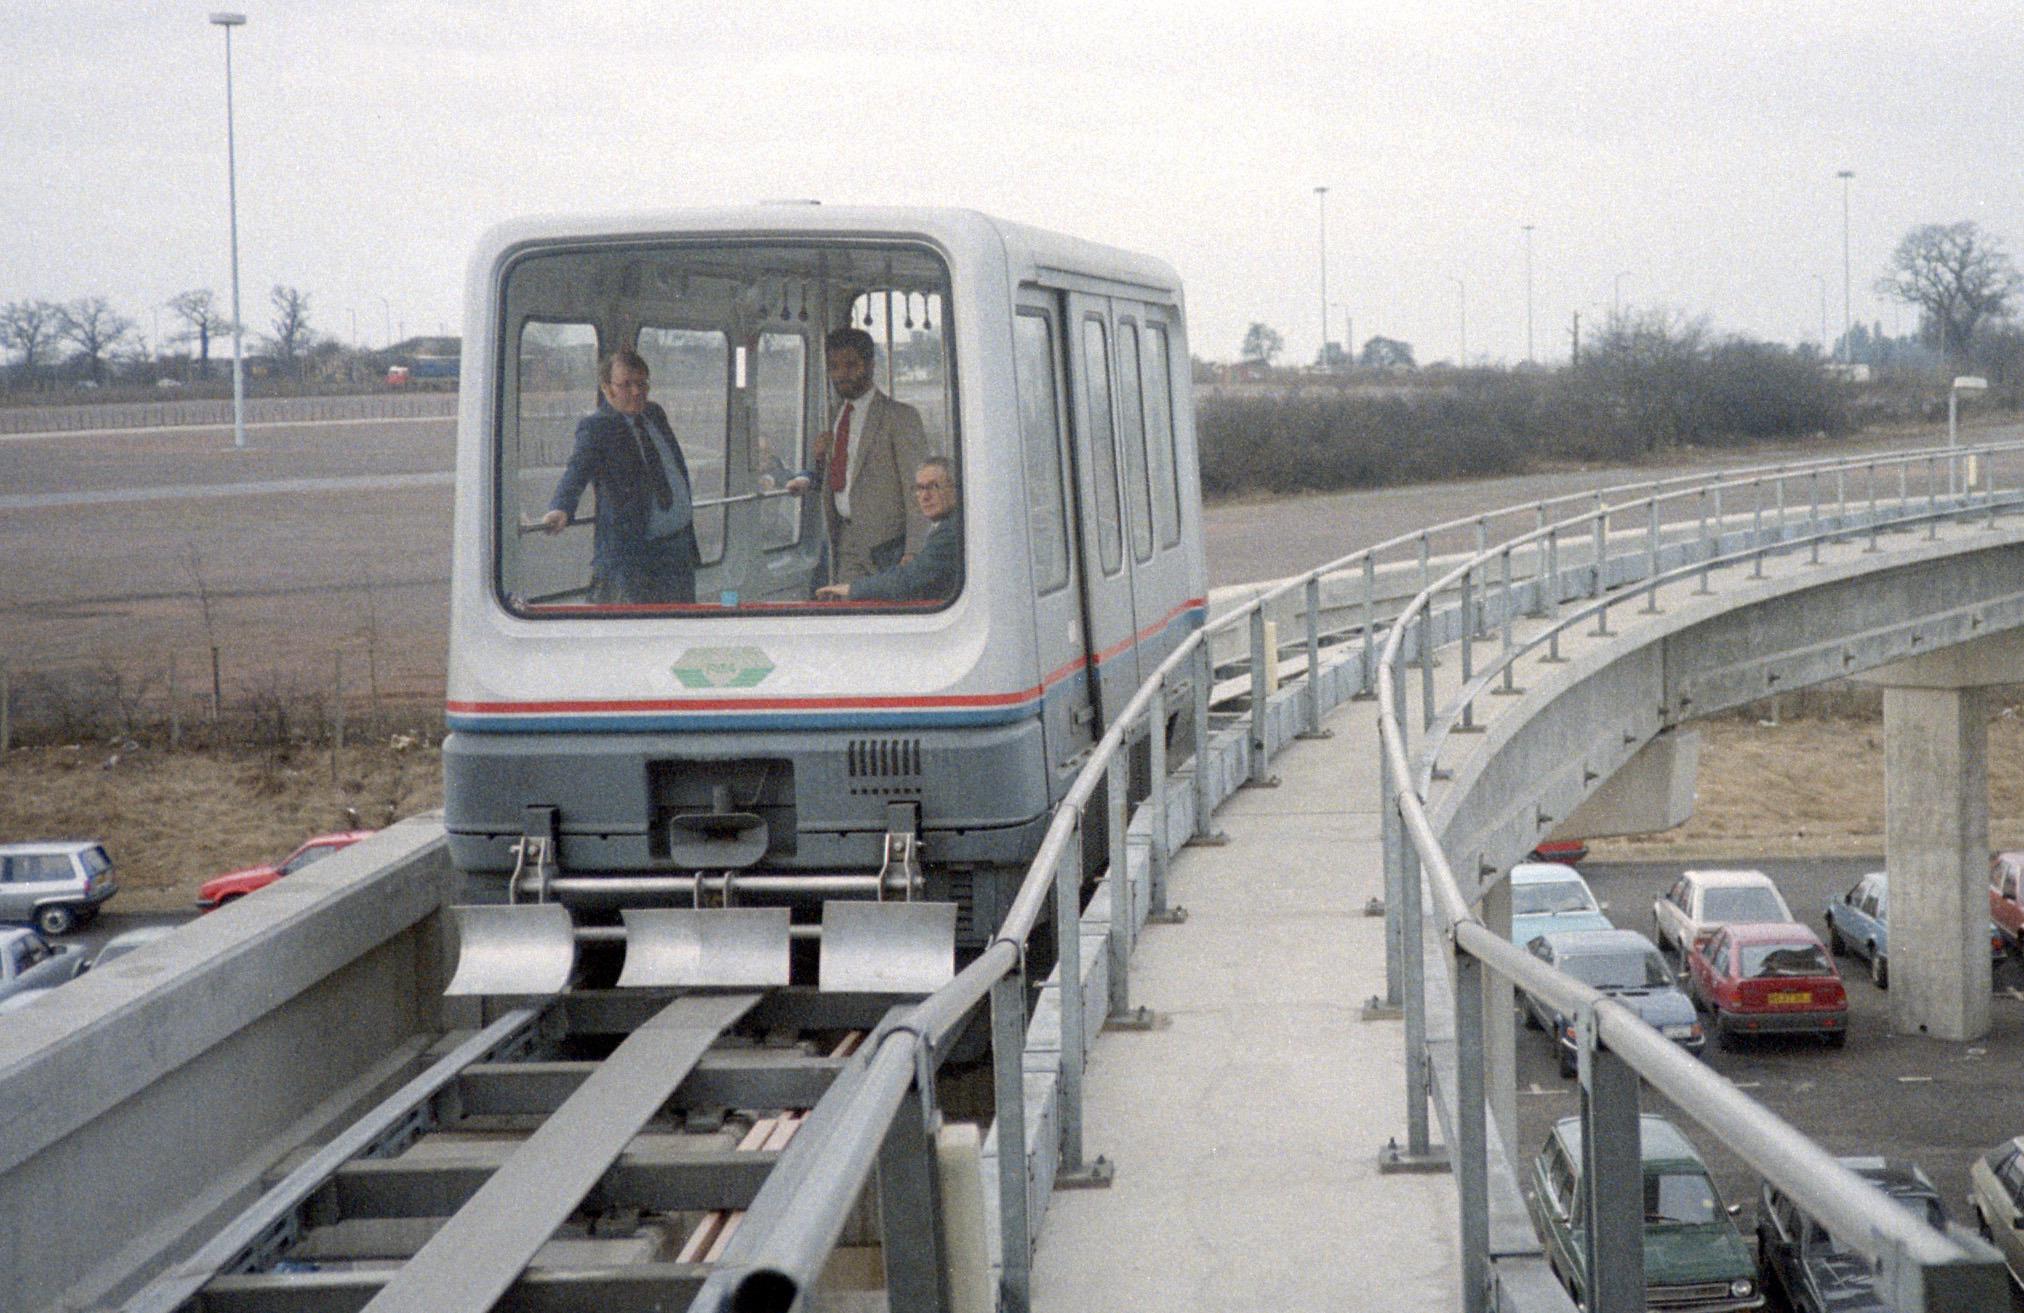 Verdens første kommersielle maglev-linje. Ikke akkurat noe lyntog. Foto: MaltaGC, CC-BY-SA3.0